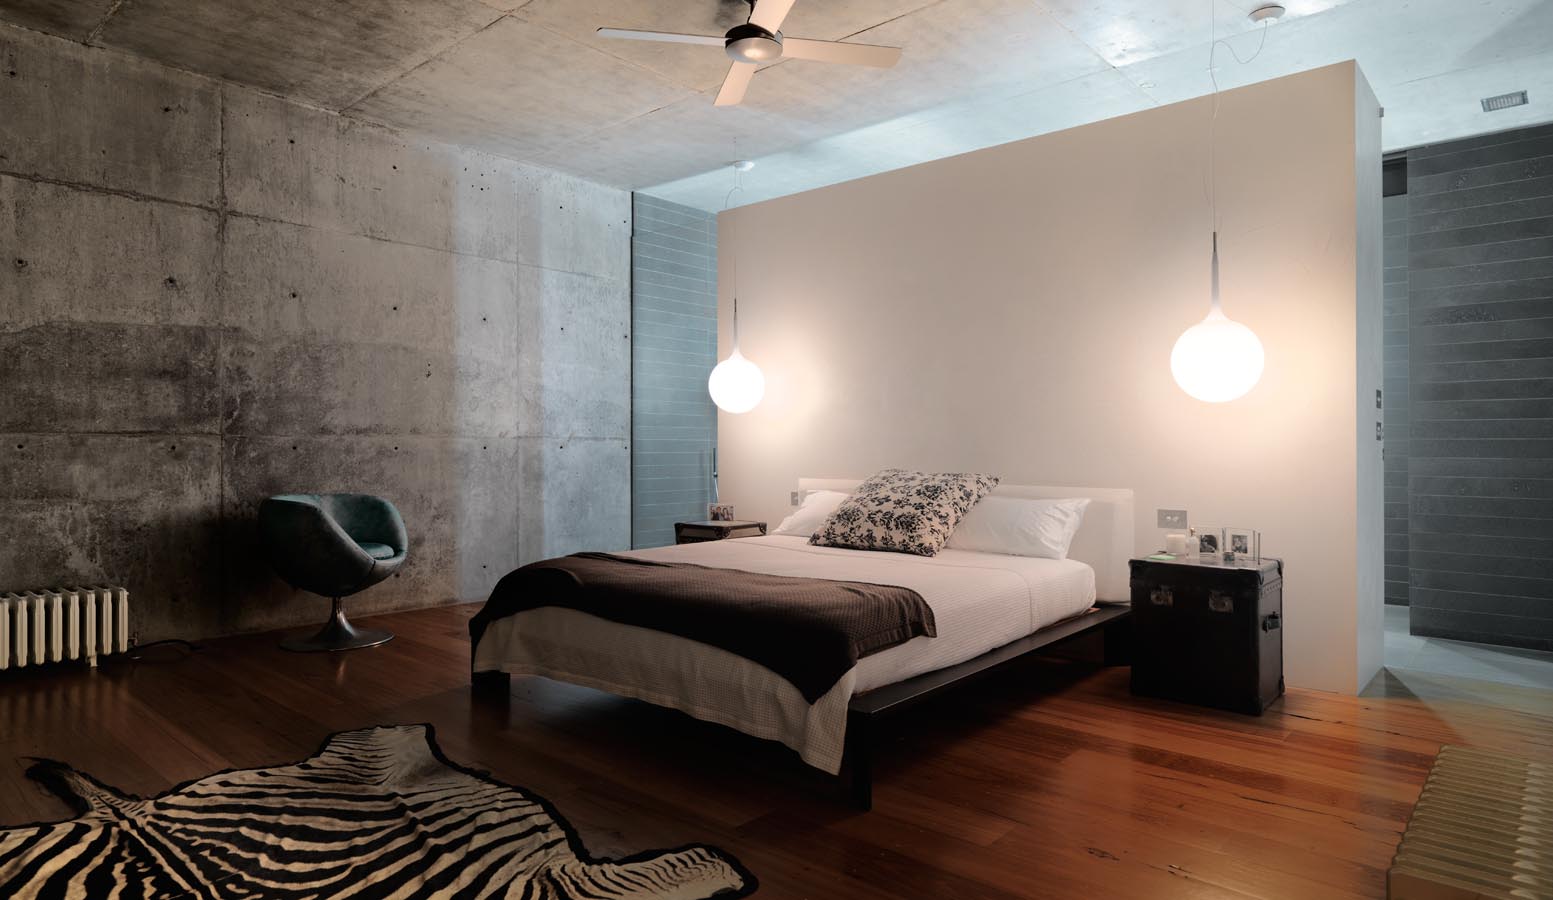 bedroom in industrial indoor photoshoot locations